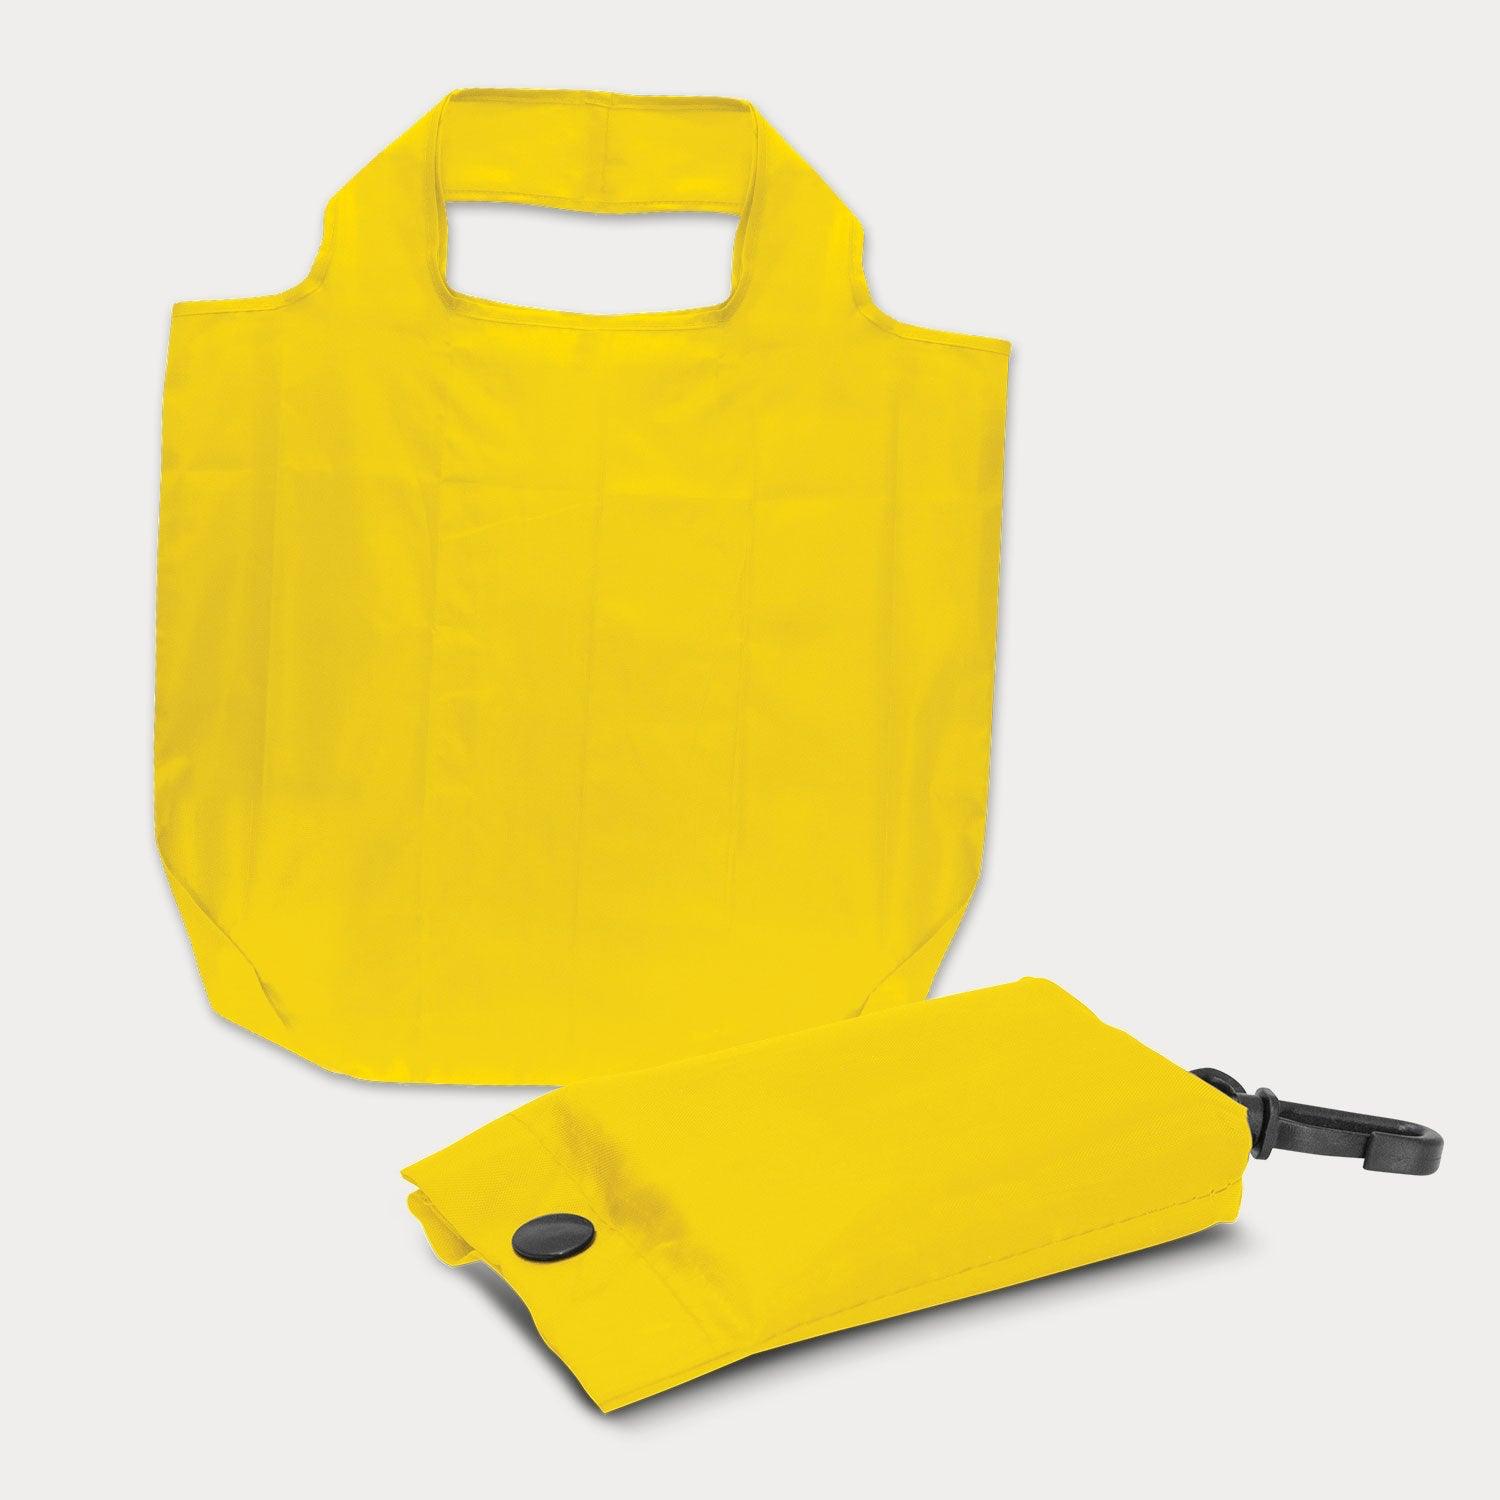 Custom Folding Shopping Bag | Bag-all